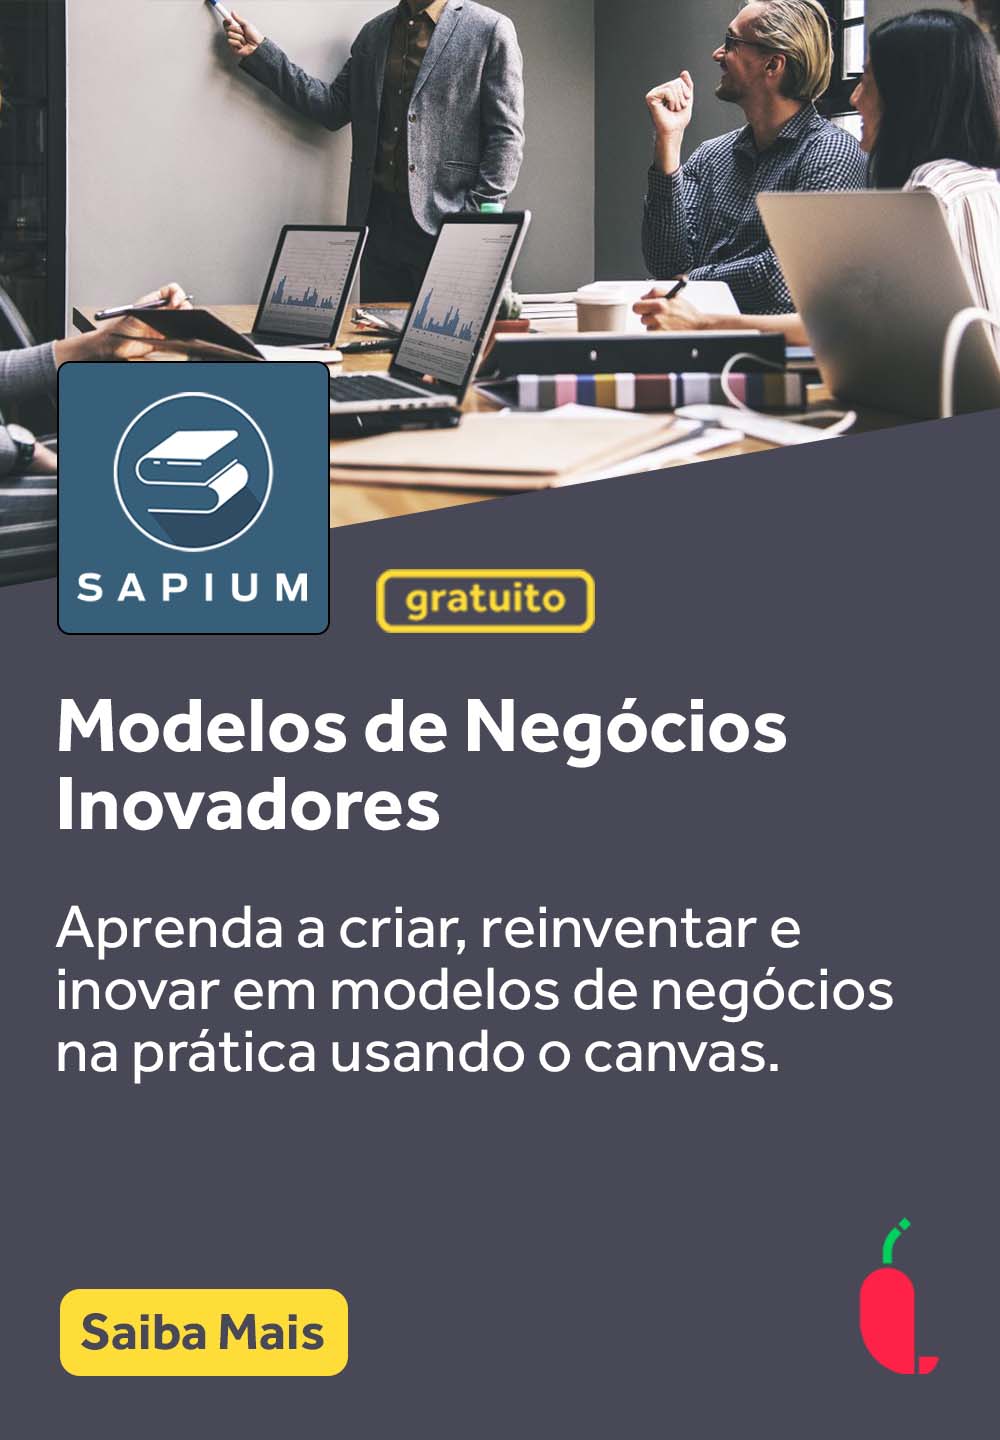 Banner_Cursos_Pimenta_Sapium_Modelos de negócios inovadores